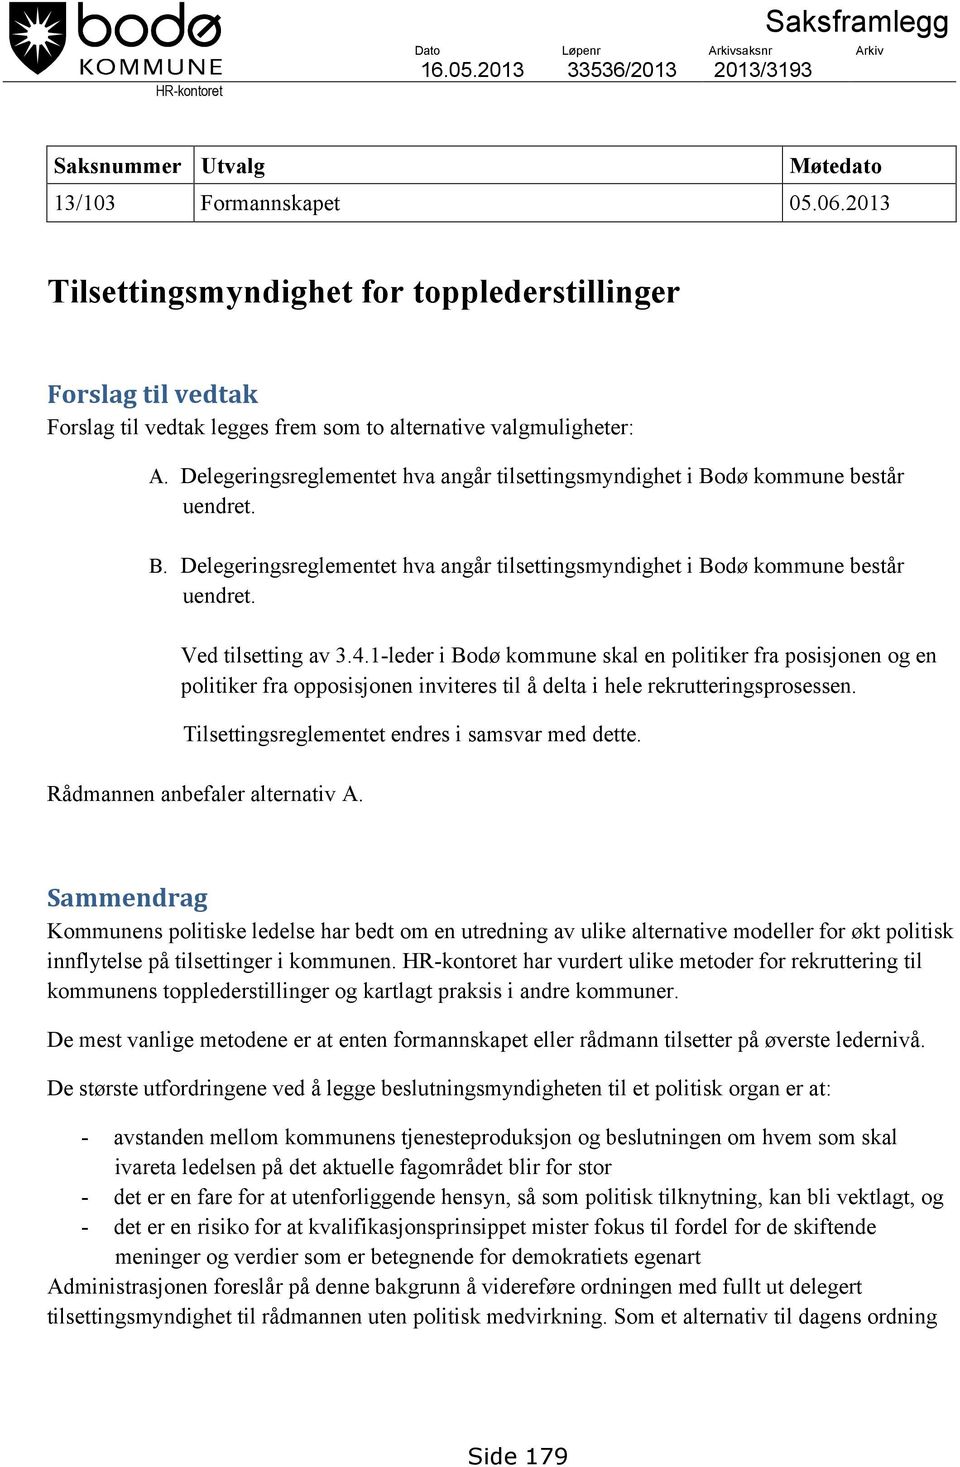 Delegeringsreglementet hva angår tilsettingsmyndighet i Bodø kommune består uendret. B. Delegeringsreglementet hva angår tilsettingsmyndighet i Bodø kommune består uendret. Ved tilsetting av 3.4.